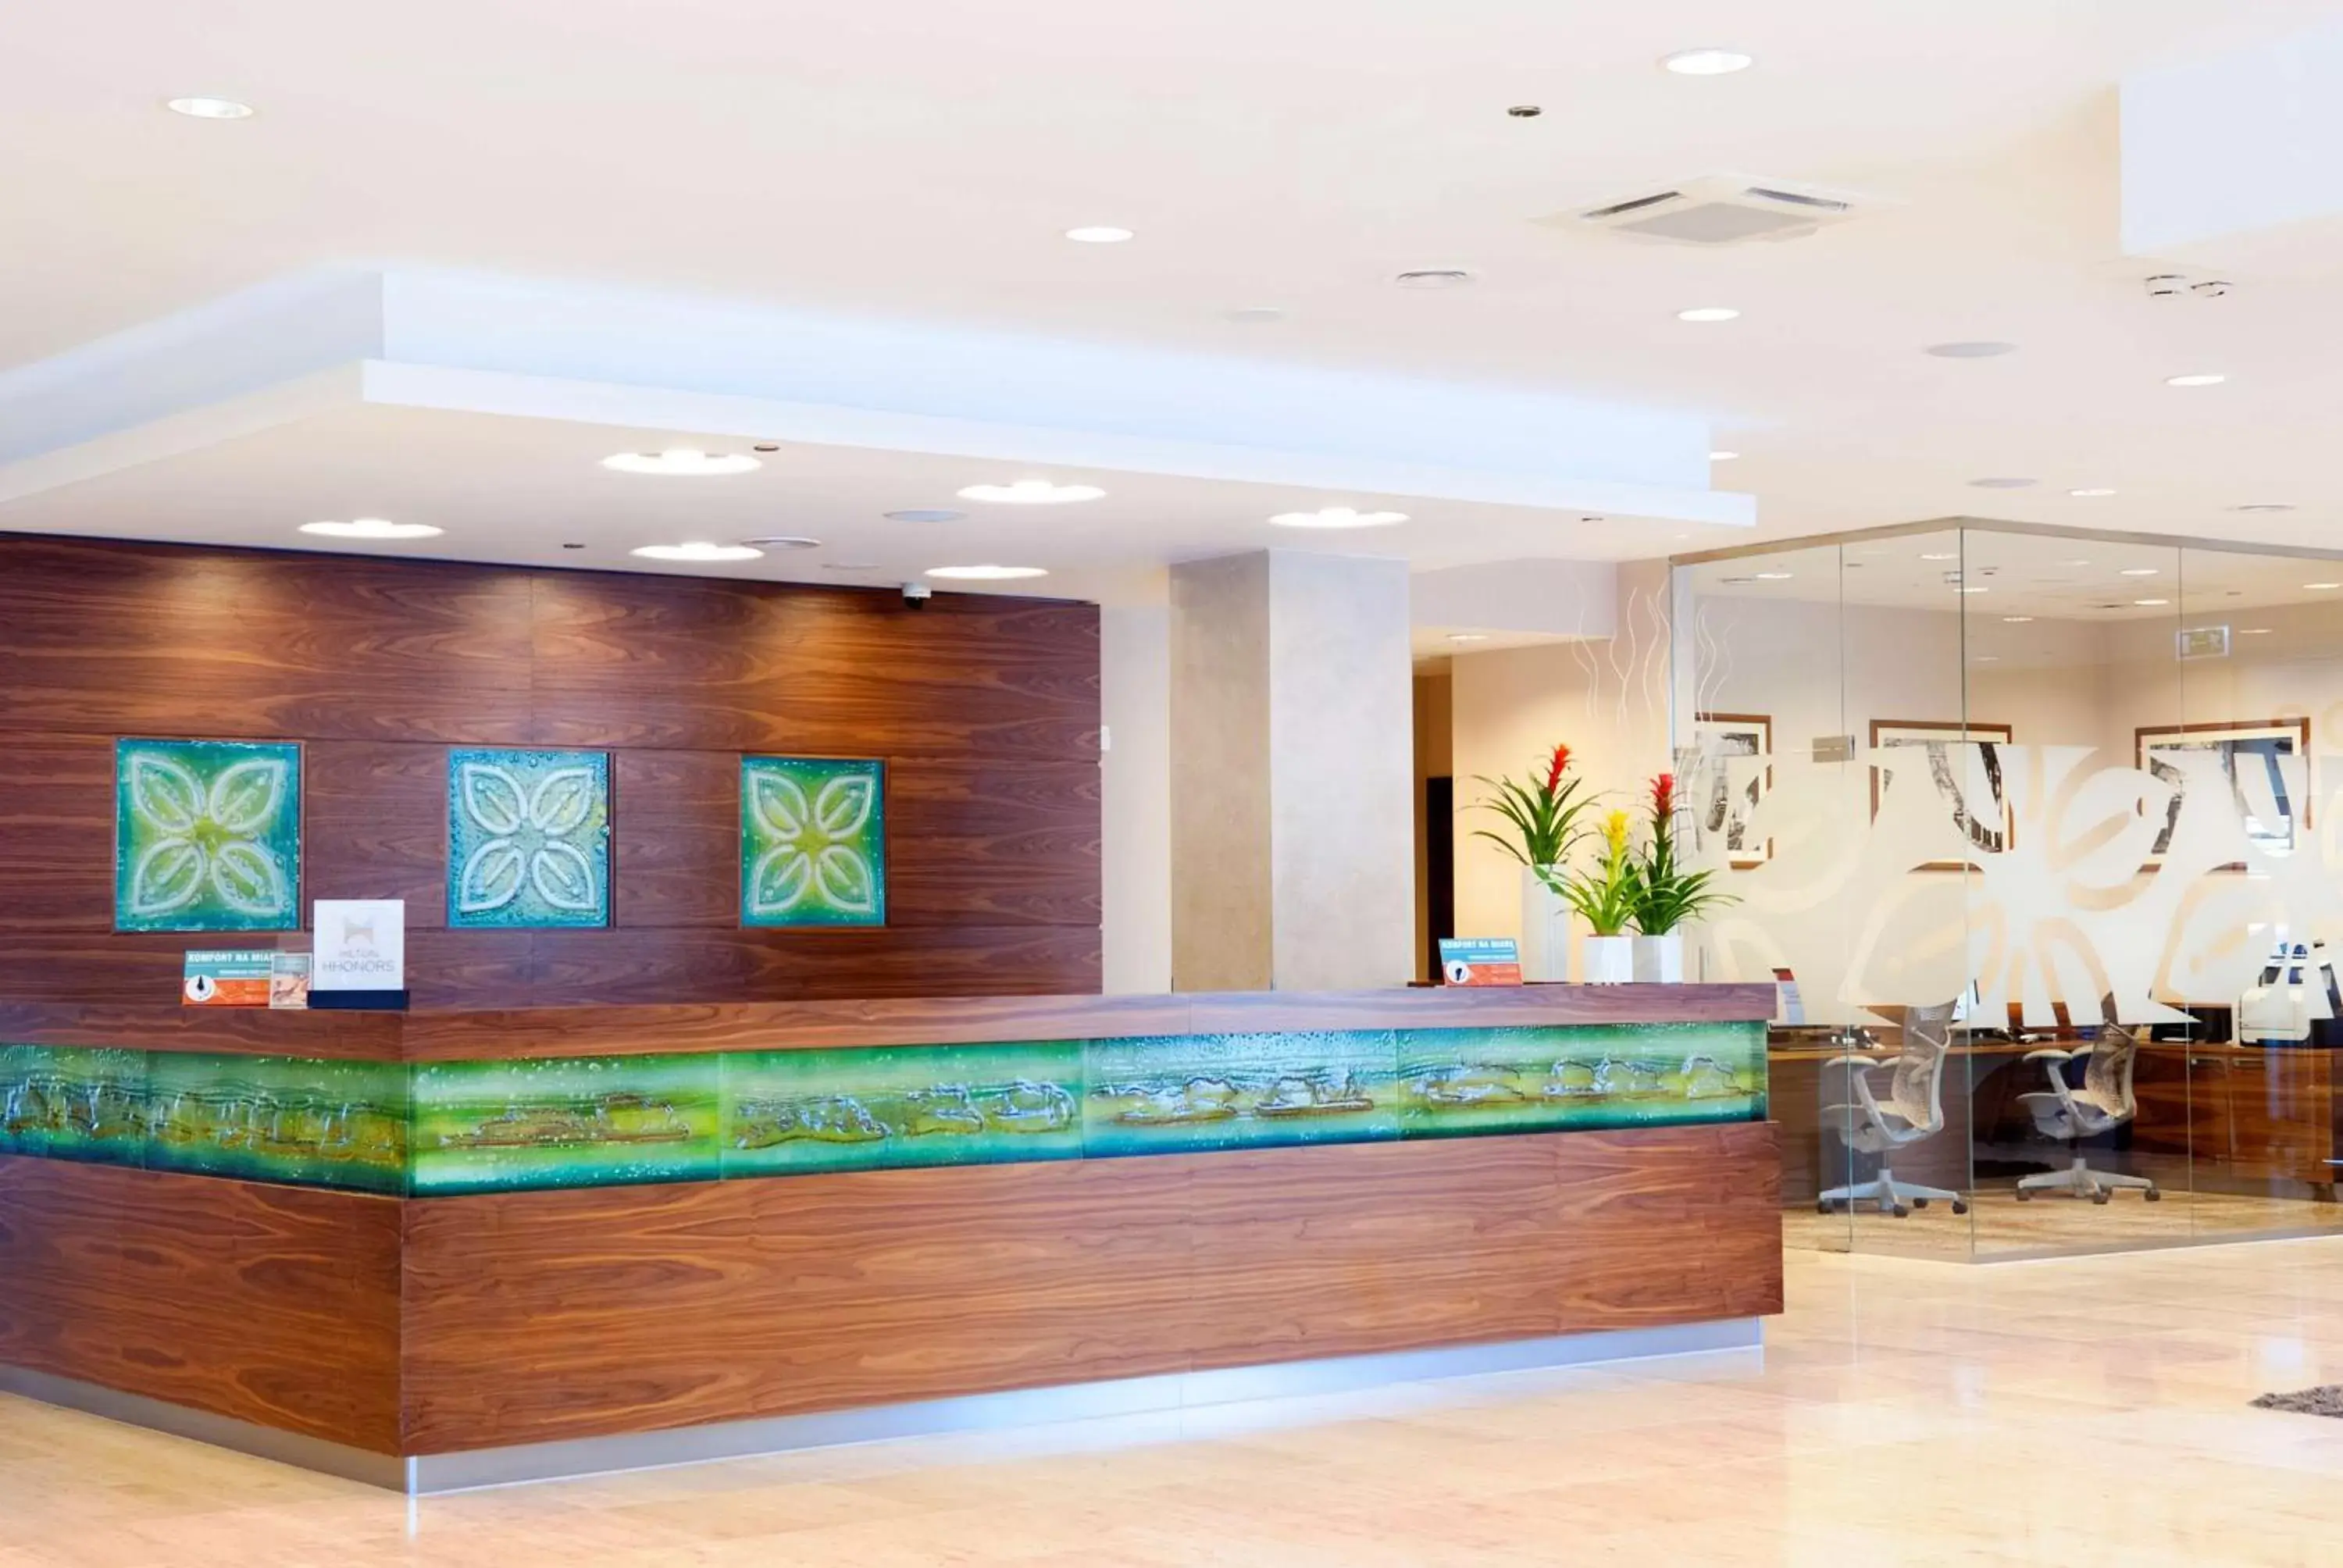 Lobby or reception, Lobby/Reception in Hilton Garden Inn Krakow